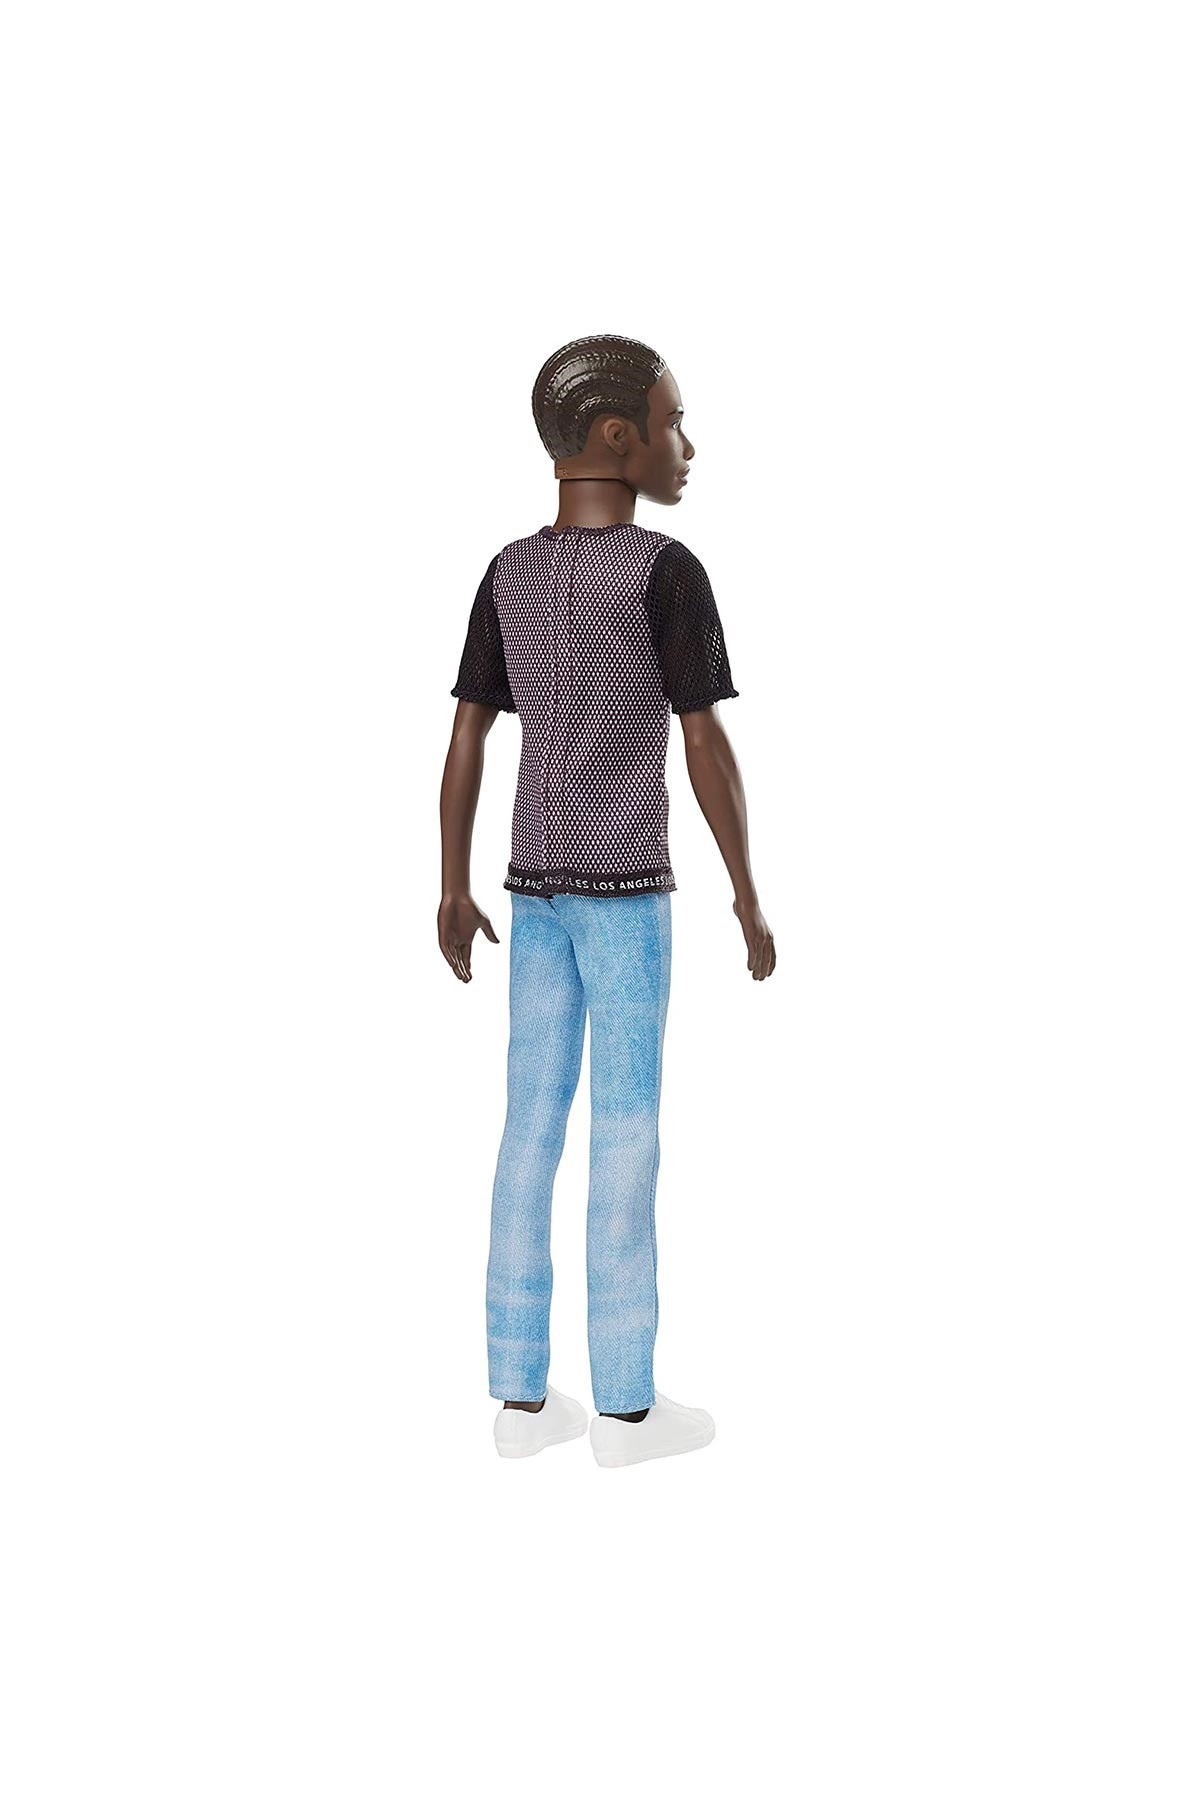 Barbie Ken Fashionistas Bebek Mavi Pantolonlu, LA Tişörtlü GDV13